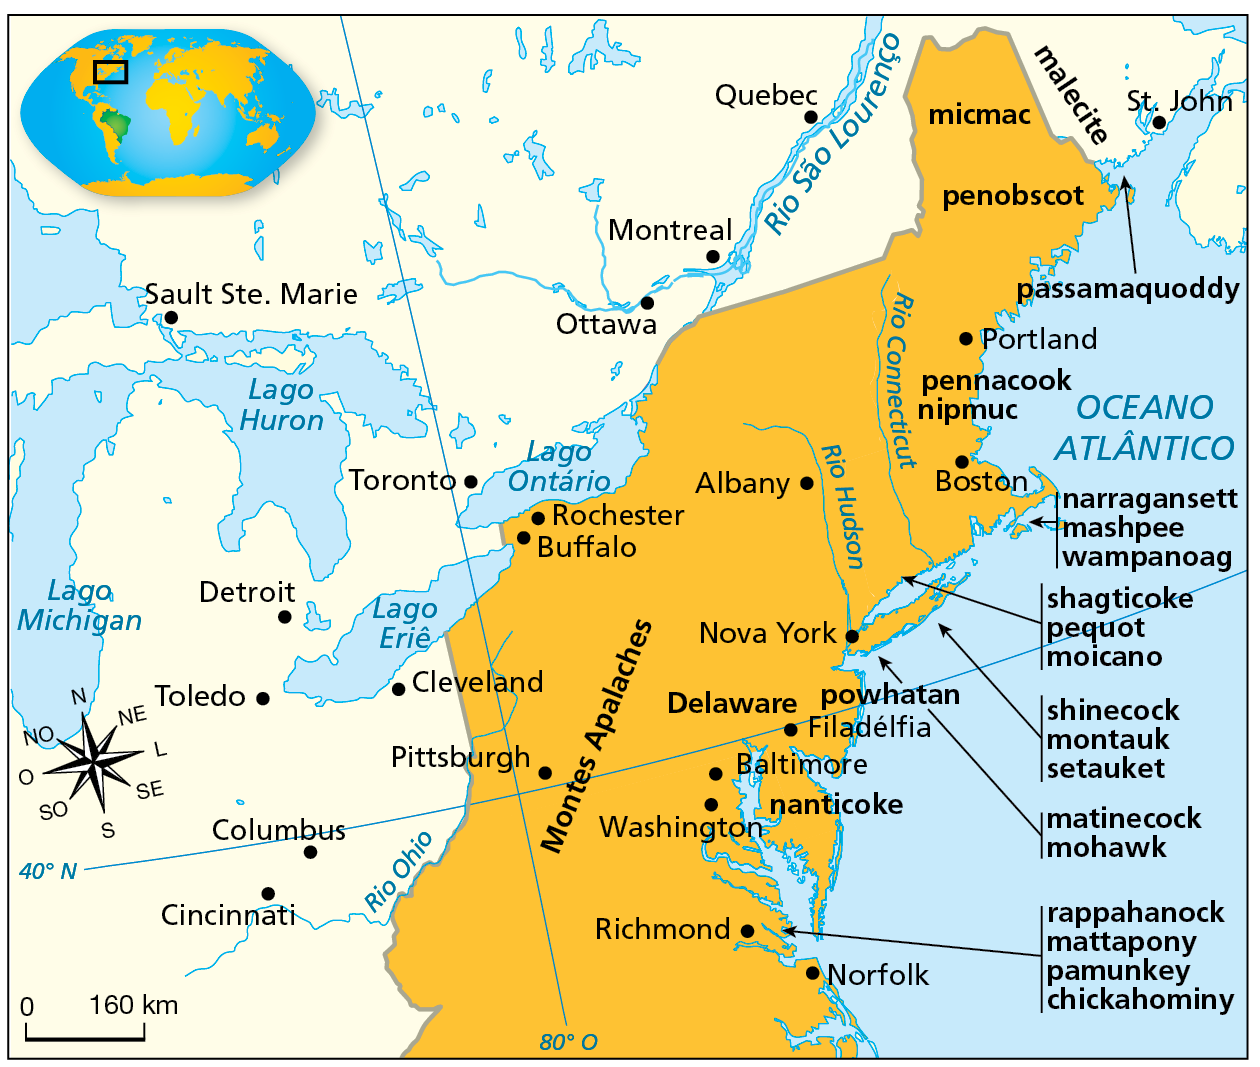 Mapa. Povos indígenas e as Treze Colônias inglesas. Século dezessete. Mapa representando a costa Leste da América do Norte. Destaque em amarelo para uma porção do território, entre o Rio São Lourenço, o Lago Ontário, o Lago Eriê e o Rio Ohio e o litoral banhado pelo Oceano Atlântico. Entre os povos indígenas, são destacados:
Na região da Baía de Fundy, próximo à cidade de Saint John: malecite, micmac, passamaquoddy e penobscot.
Na região de Cape Cody, ao norte da cidade de Boston: pennacook e nipmuc.
Na região de Cape Cody, a sudeste da cidade de Boston: narragansett, mashpee e wampanoag. 
Na região entre os rios Connecticut e Hudson: shagticoke, pequot e moicano. 
No norte de Long Island: shinecock, montauk e setauket.
No sul de Long Island: atinecock e mohawk. 
Na região da Filadélfia: powhatan. 
Na região da Baía de Chesapeake: nanticoke.
Na região da cidade de Richmond: rappahanock, mattapony, pamunkey e chickahominy. 
Destaque para os Montes Apalaches, entre o Rio Ohio e a costa Atlântica e para as cidades: Na área destacada em amarelo: Portland, Boston, Albany, Nova York, Filadélfia, Baltimore, Washington, Richmond, Norfolk, Rochester, Buffalo e Pittsburgh.
Fora da área destacada em amarelo:
Na região da Baía de Fundy: Saint John
Próximas ao Lago Eriê: Cleveland Detroit e Toledo.
Próximas ao Rio Ohio: Columbus e Cincinnati.
Próximas ao Rio São Lourenço: Quebec, Montreal e Ottawa.
Próximo ao Lago Ontário: Toronto.
Próximo do Lago Huron:  Sault Sainte Marie.
No canto inferior esquerdo, rosa dos ventos, com o norte inclinado para a esquerda, e escala de 0 a 160 quilômetros.